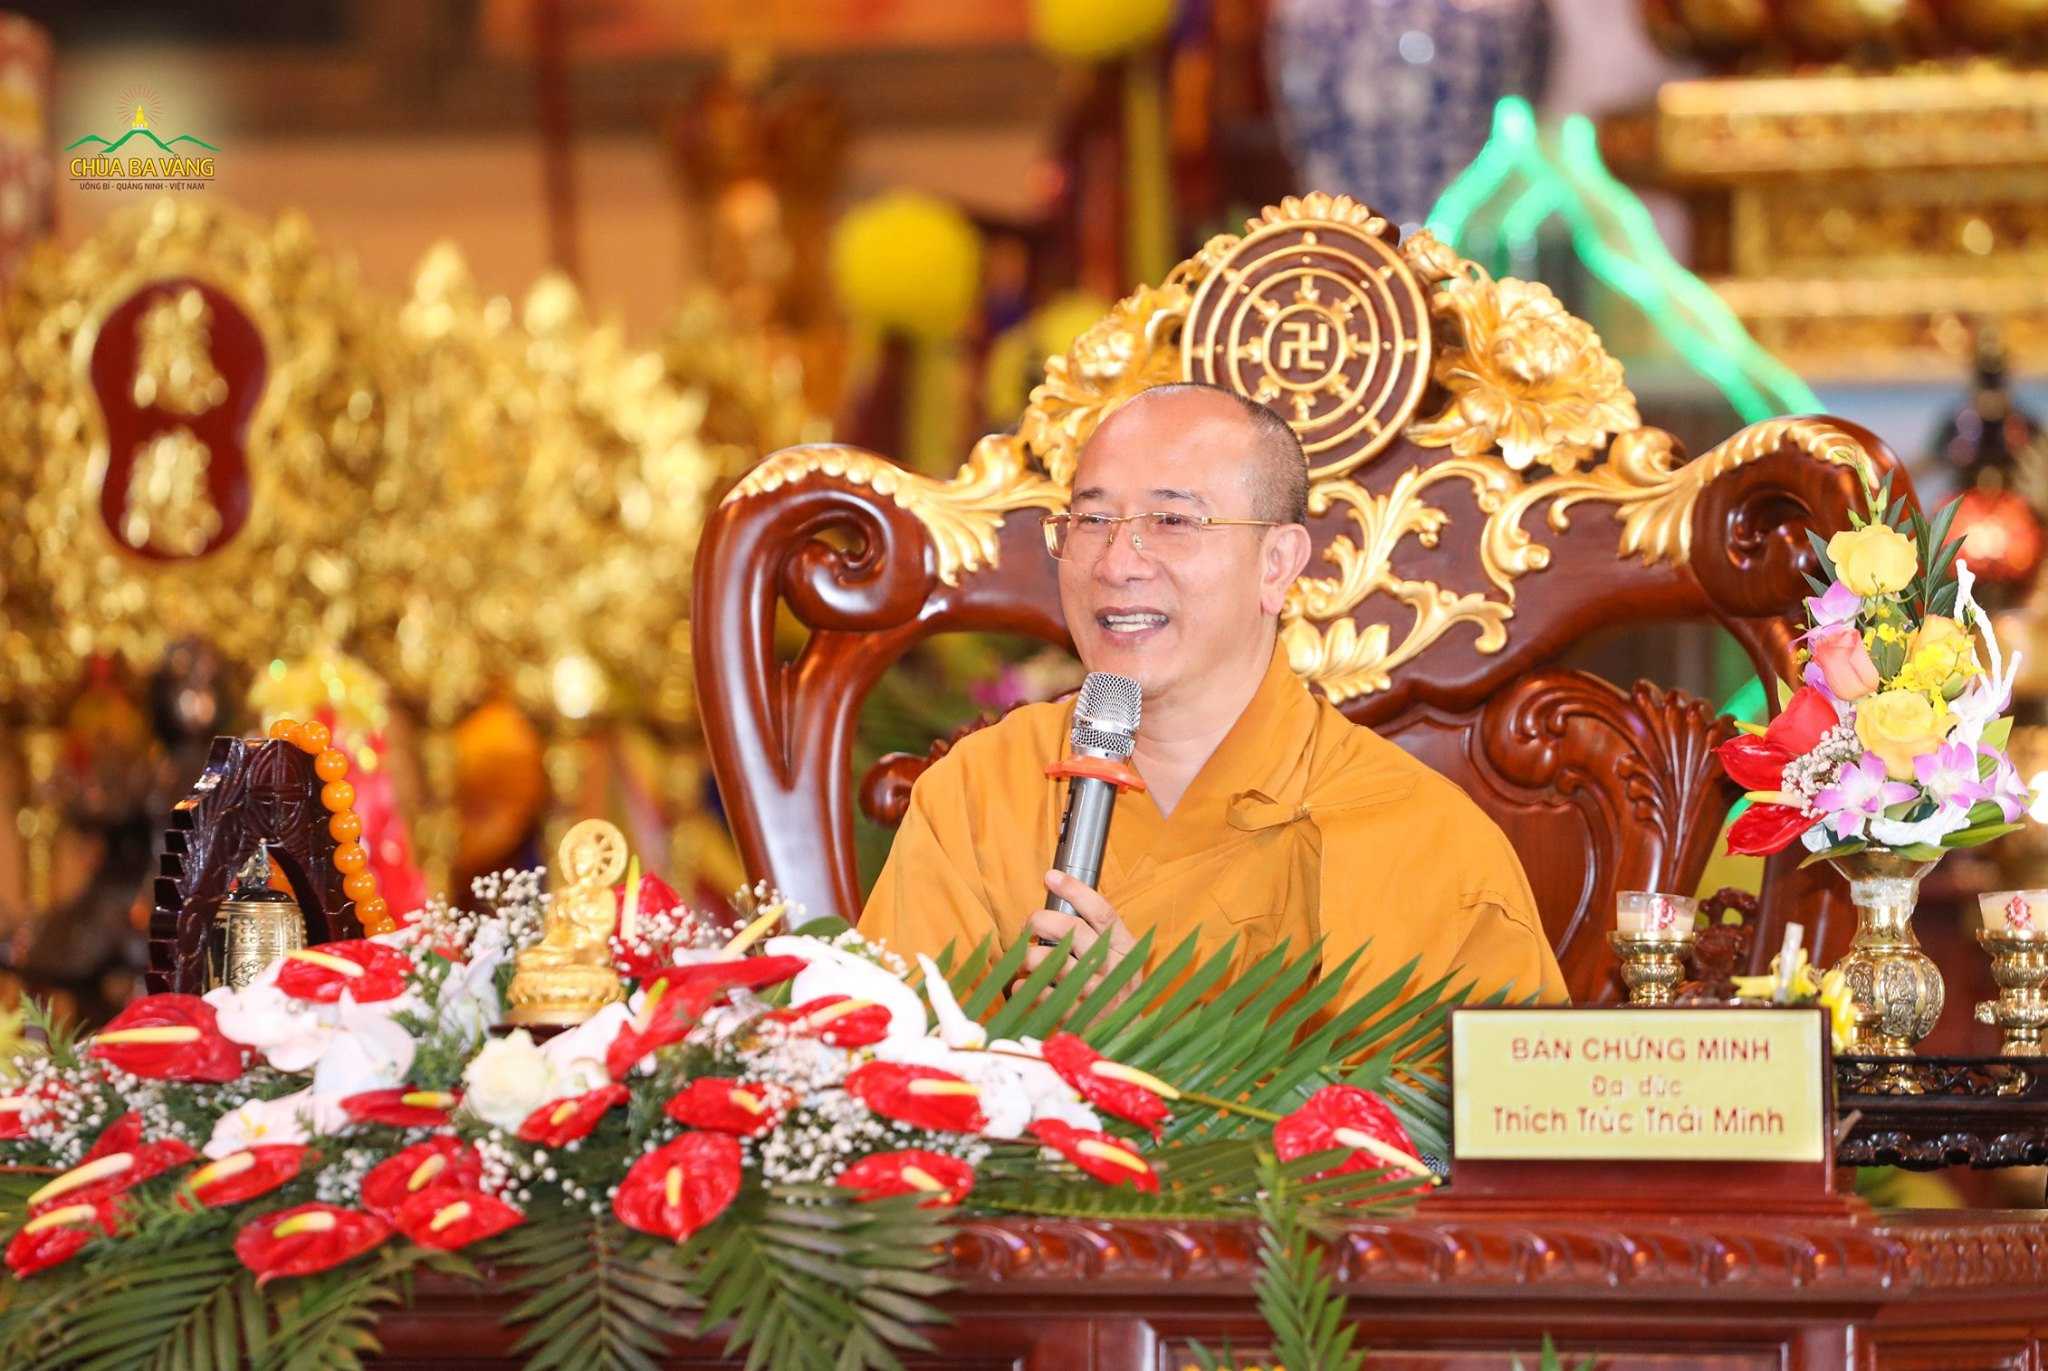 Sư Phụ Thích Trúc Thái Minh quang lâm chứng dự buổi Lễ hằng thuận 